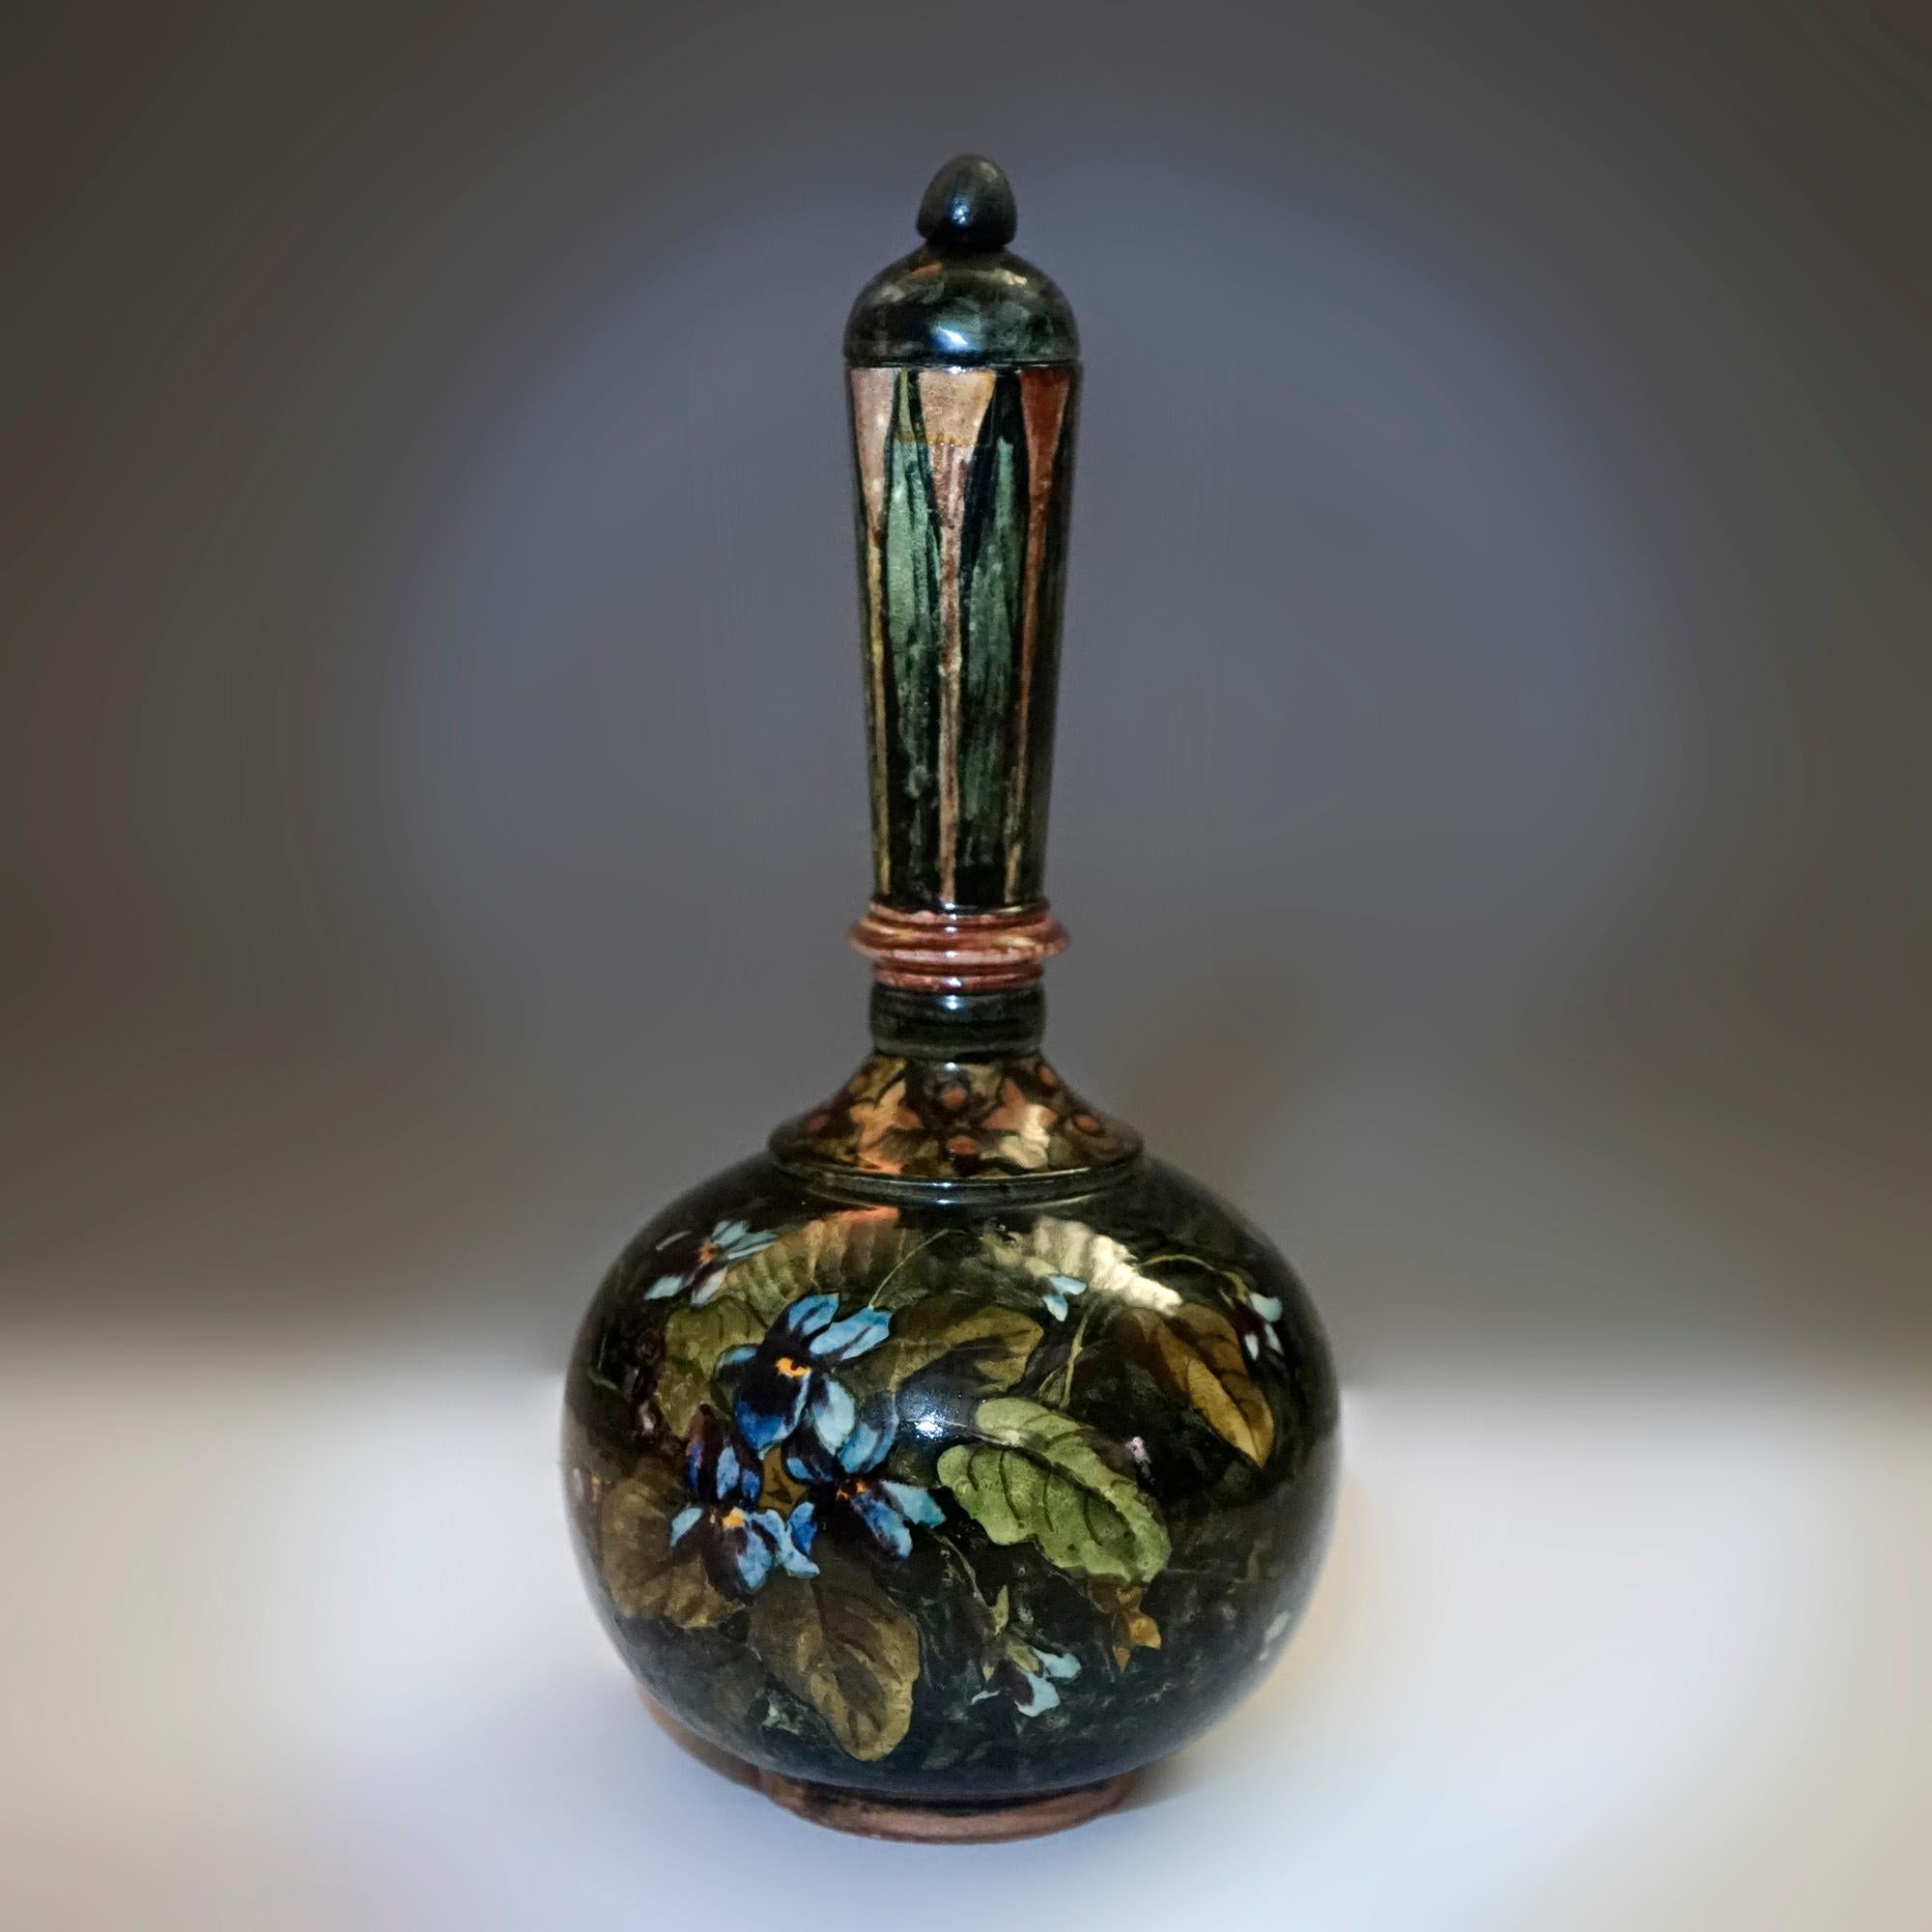 American Rare Antique John Bennett Art Pottery Lidded Bottle Vase, New York, Dated 1878